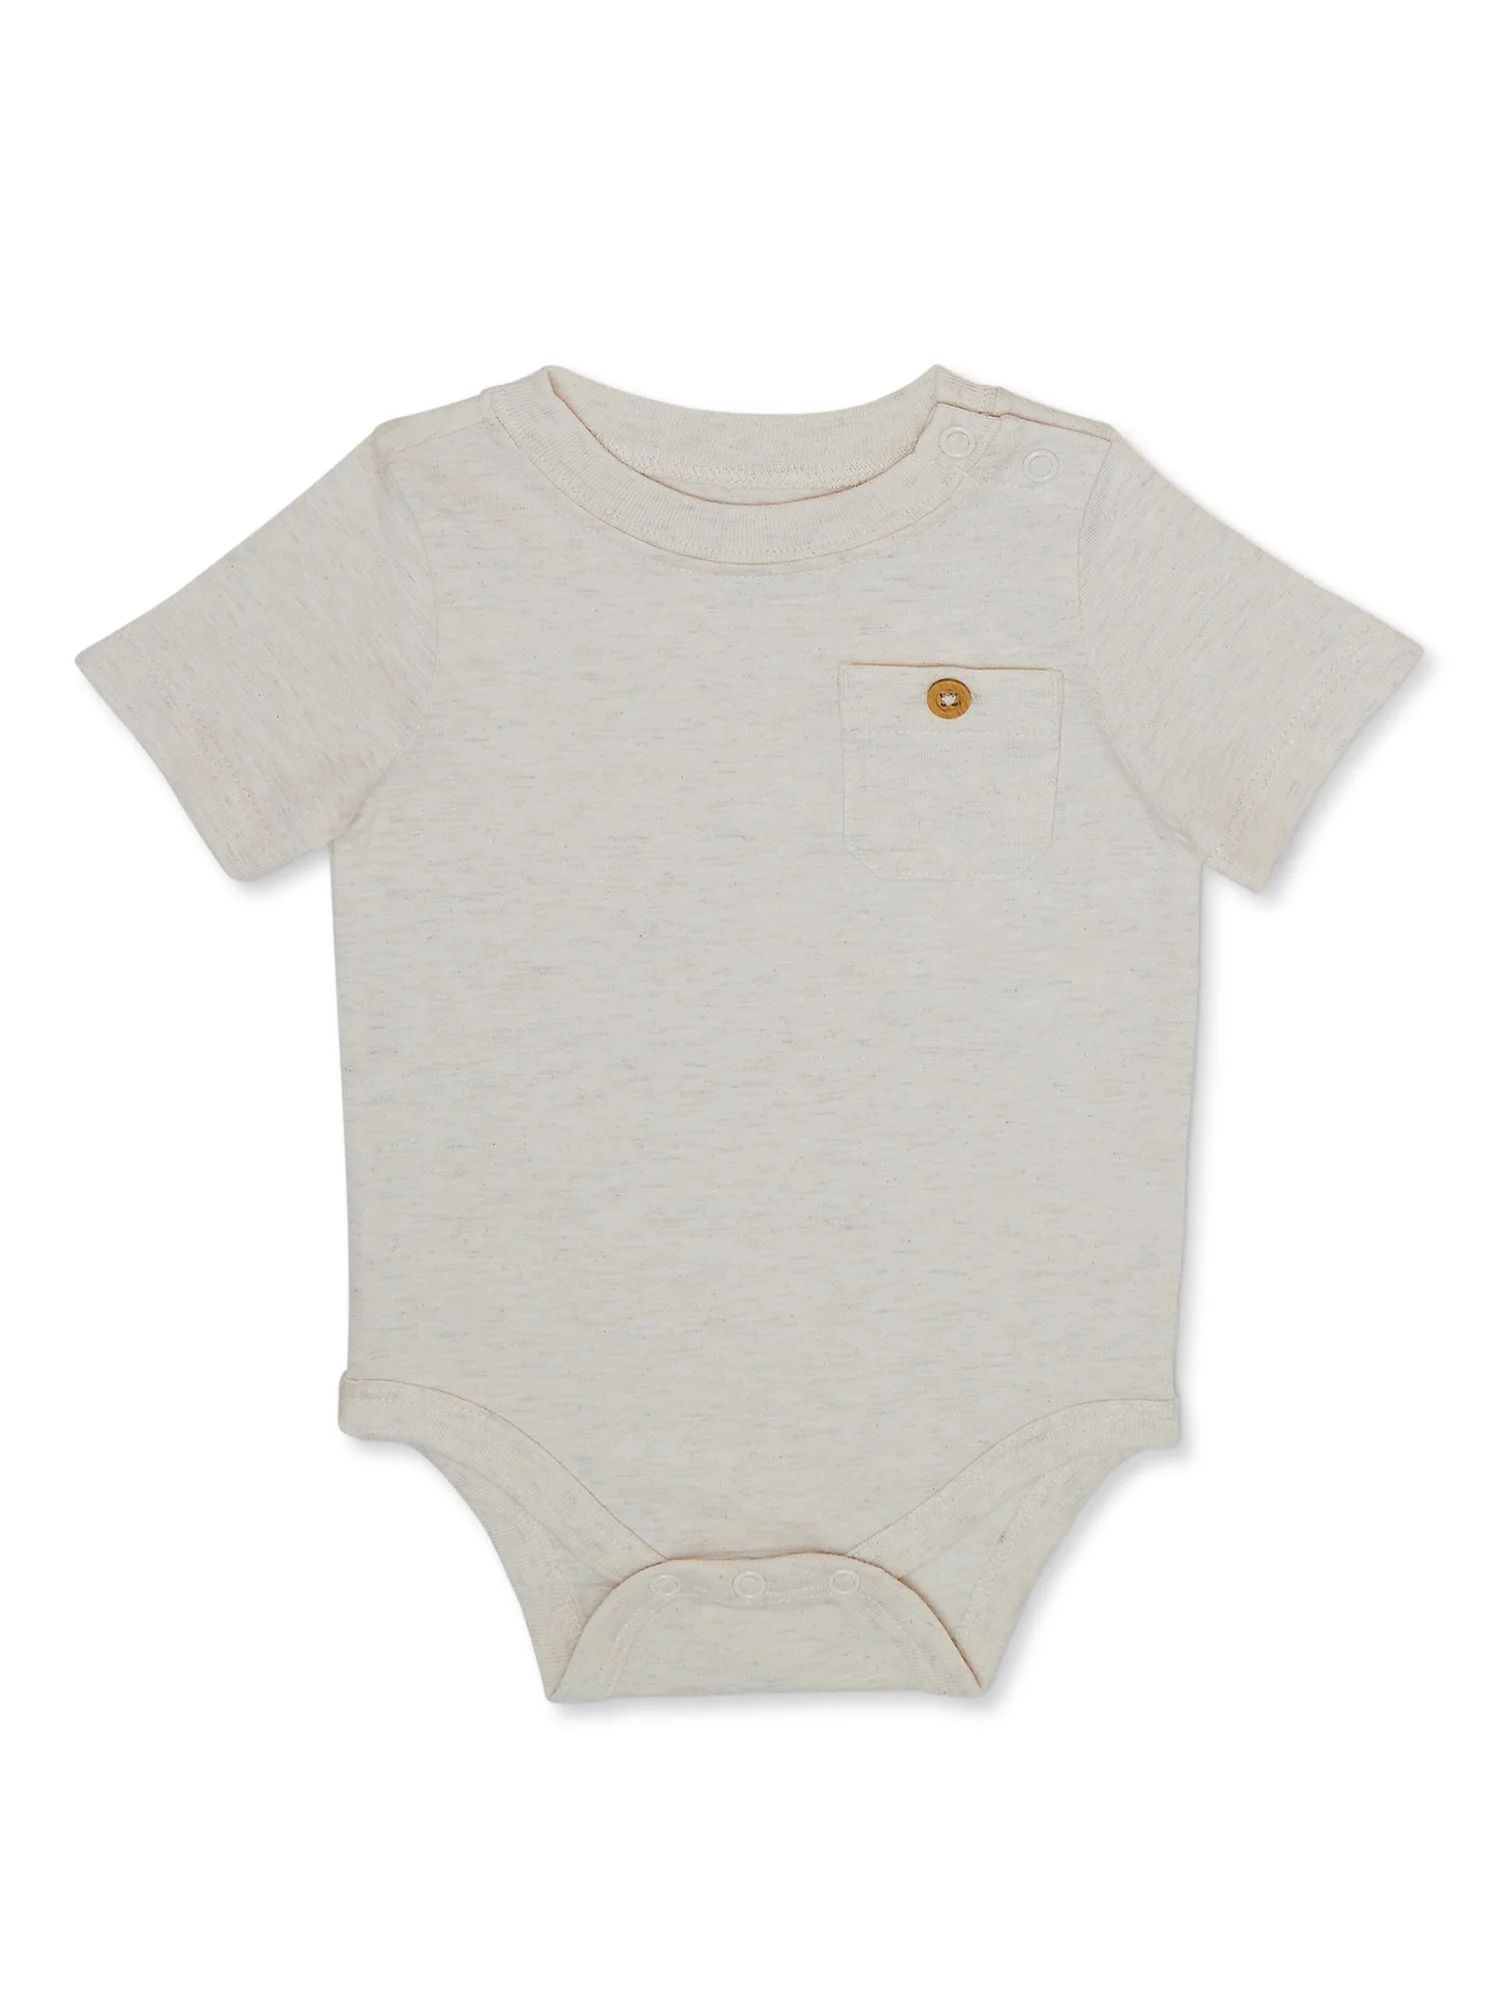 Garanimals Baby Boy Short Sleeve Solid Pocket Bodysuit, Sizes 0-24 Months | Walmart (US)